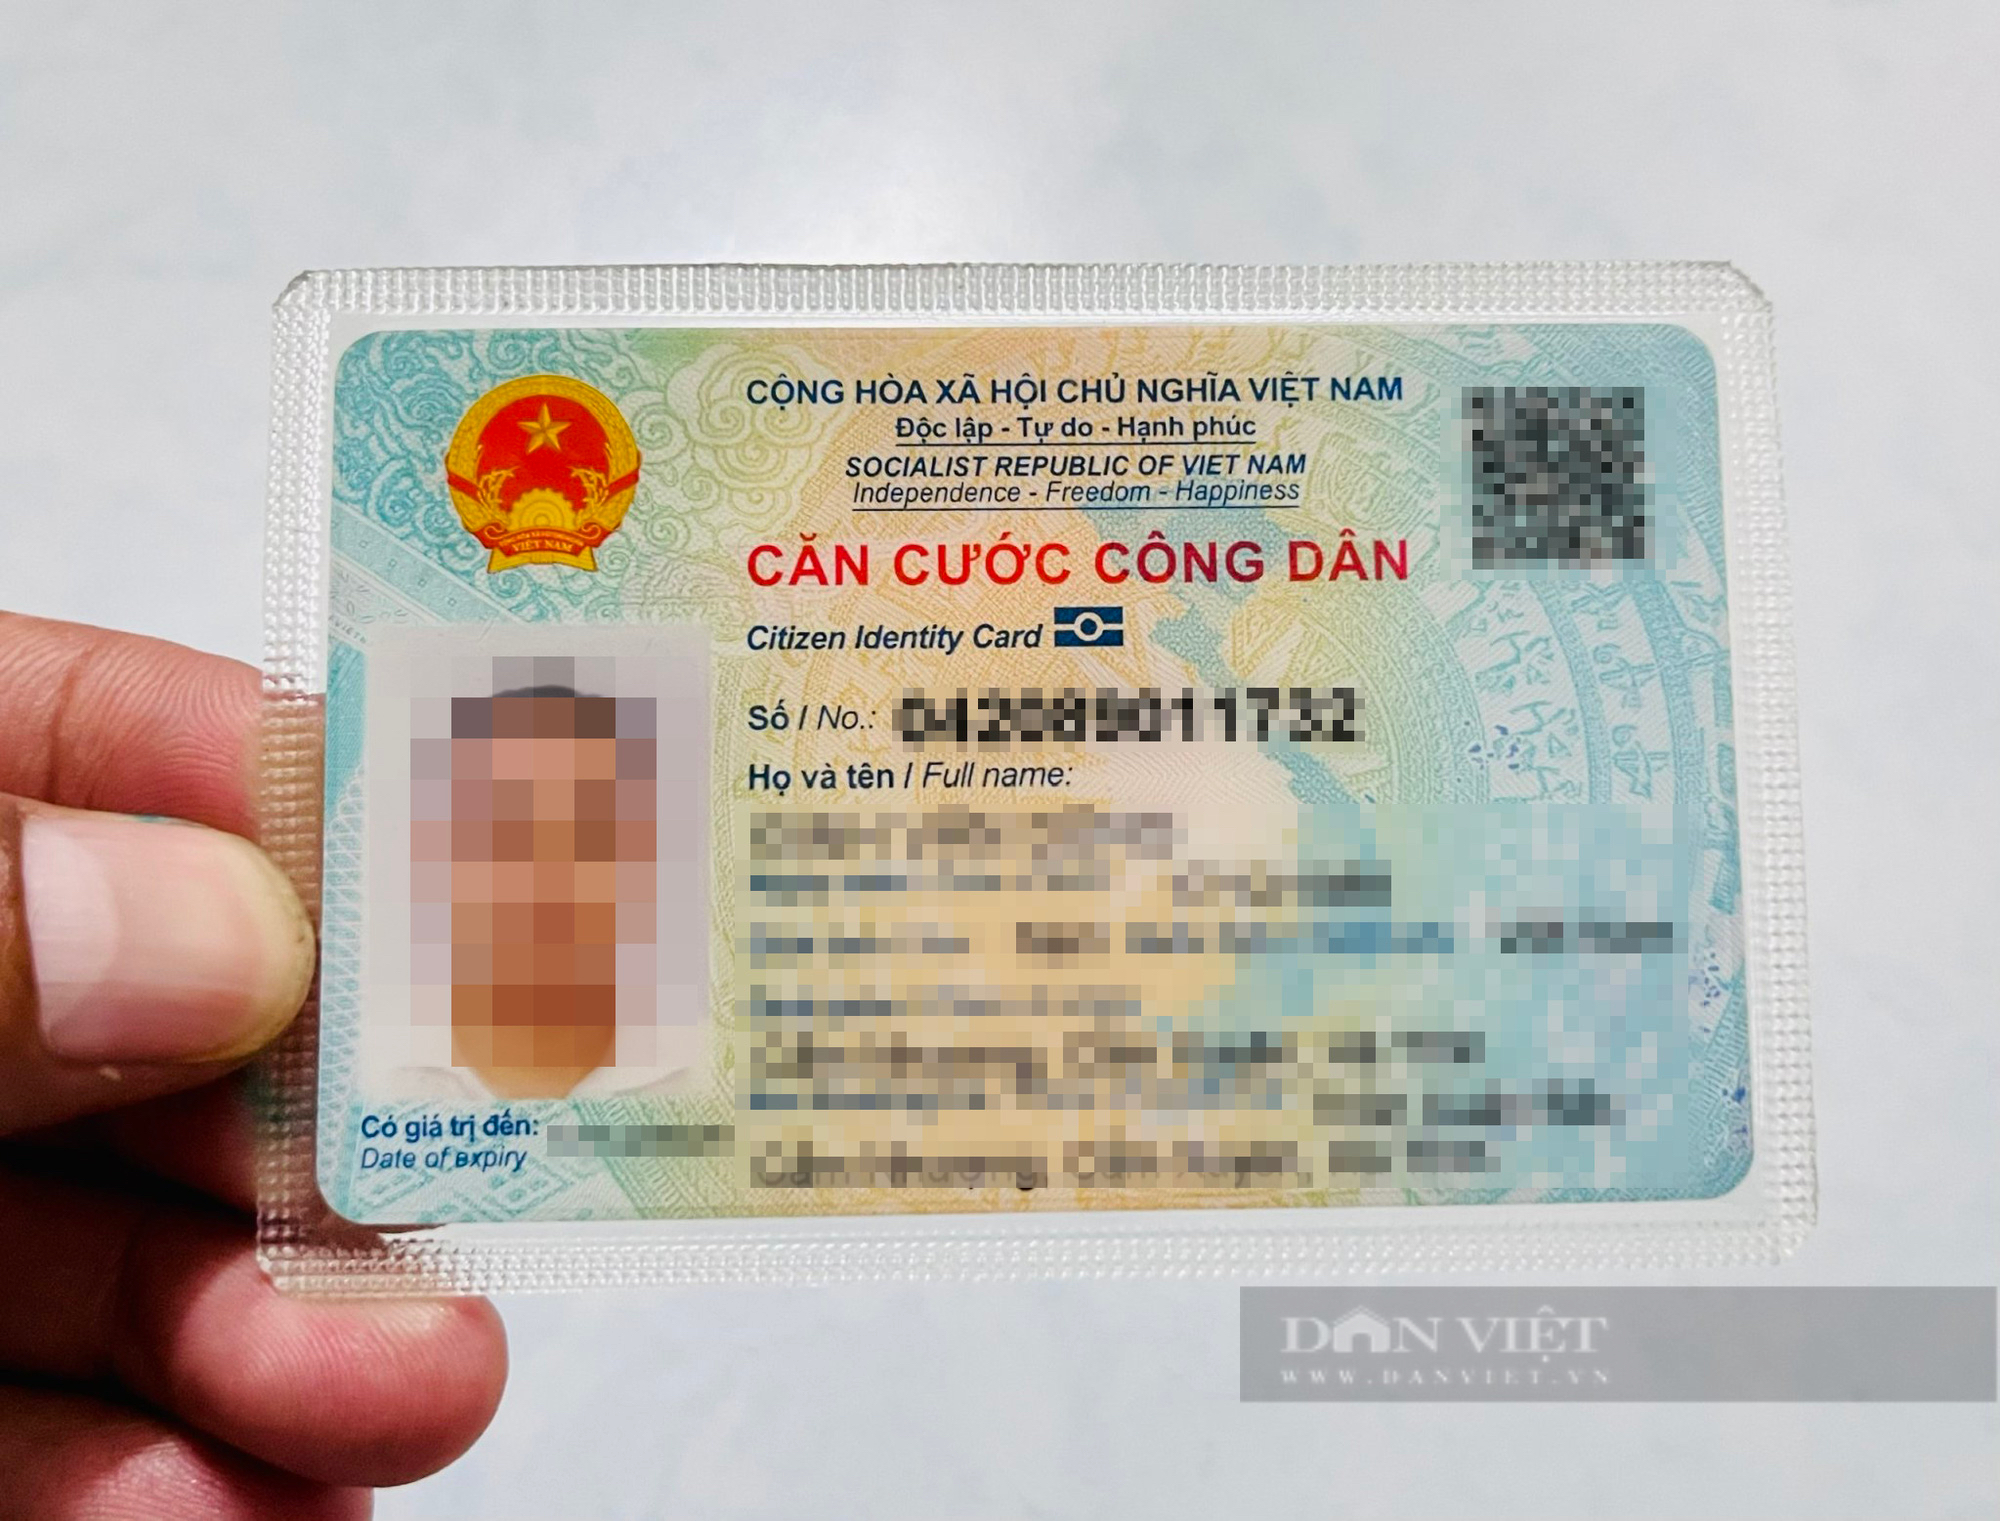 Giám đốc Bưu điện tỉnh Bình Dương nói gì về việc người dân đăng ký chuyển phát thẻ CCCD nhưng phải tự đi lấy? - Ảnh 2.